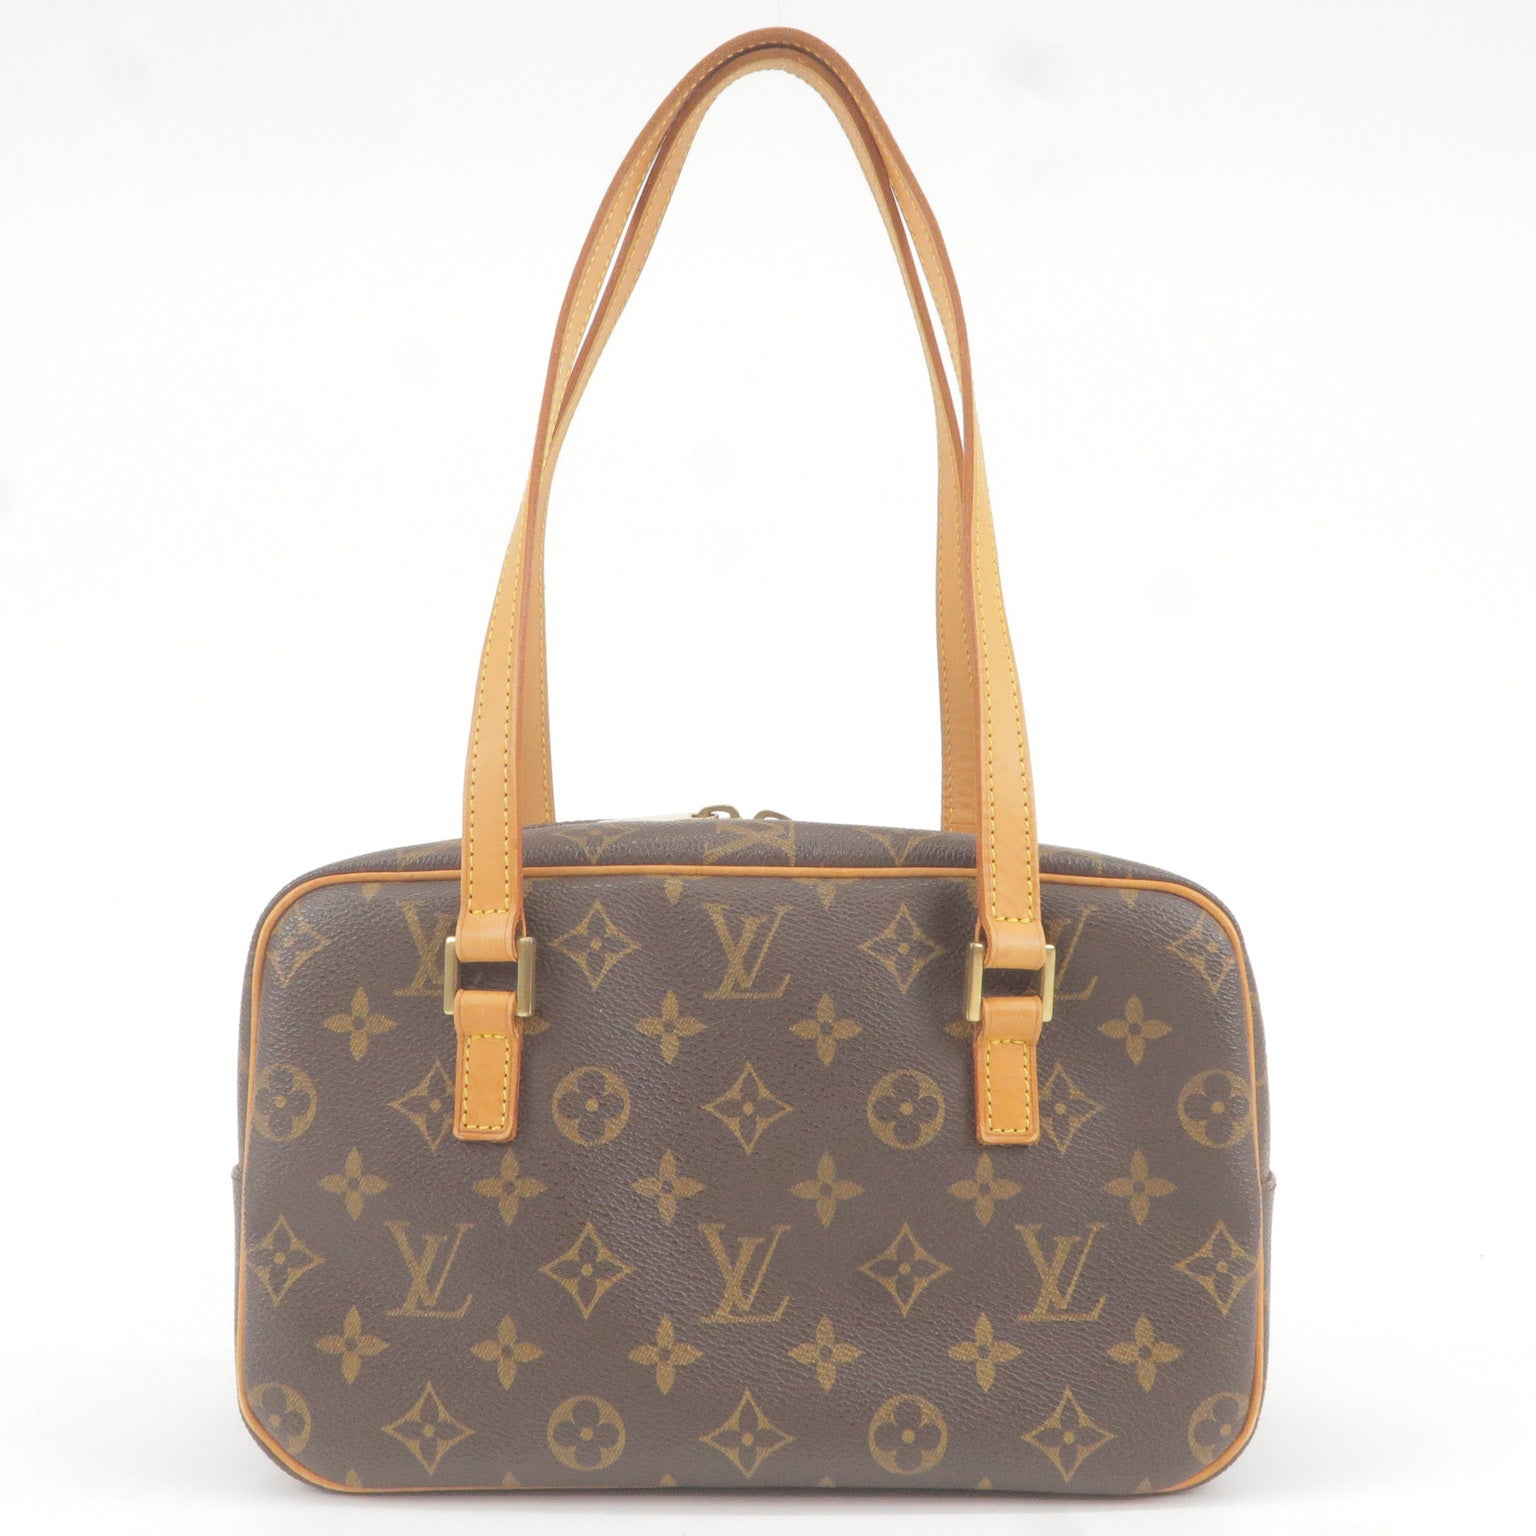 Louis Vuitton Cite Bag Review 